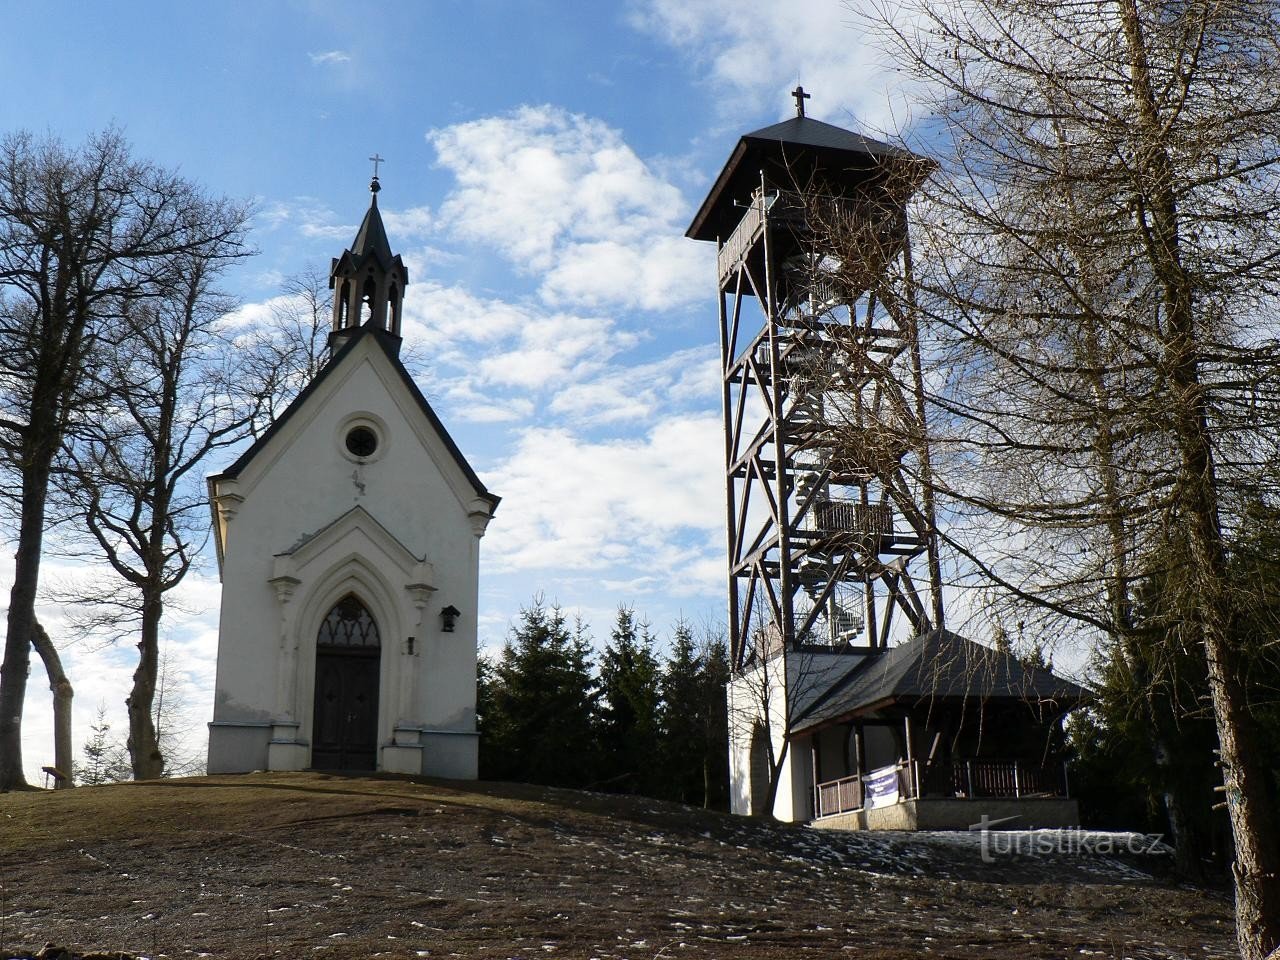 St. Markedsplads, kapel og udsigtstårn